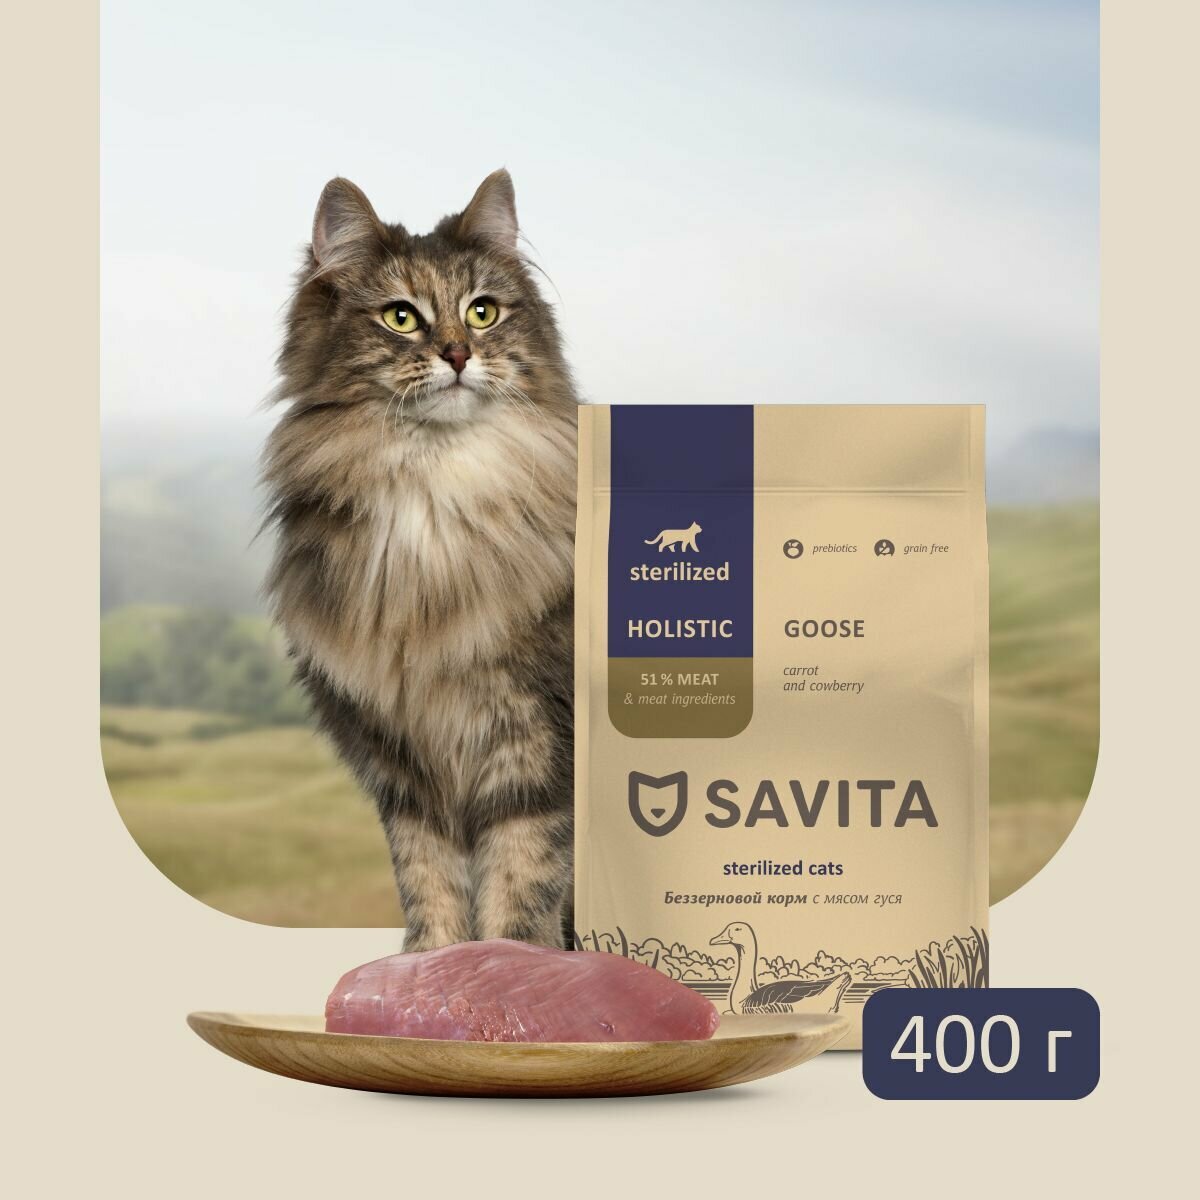 Cухой корм для стерилизованных кошек SAVITA, беззерновой класса HOLISTIC со свежим мясом гуся, морковью и тыквой, 400 грамм. - фотография № 6